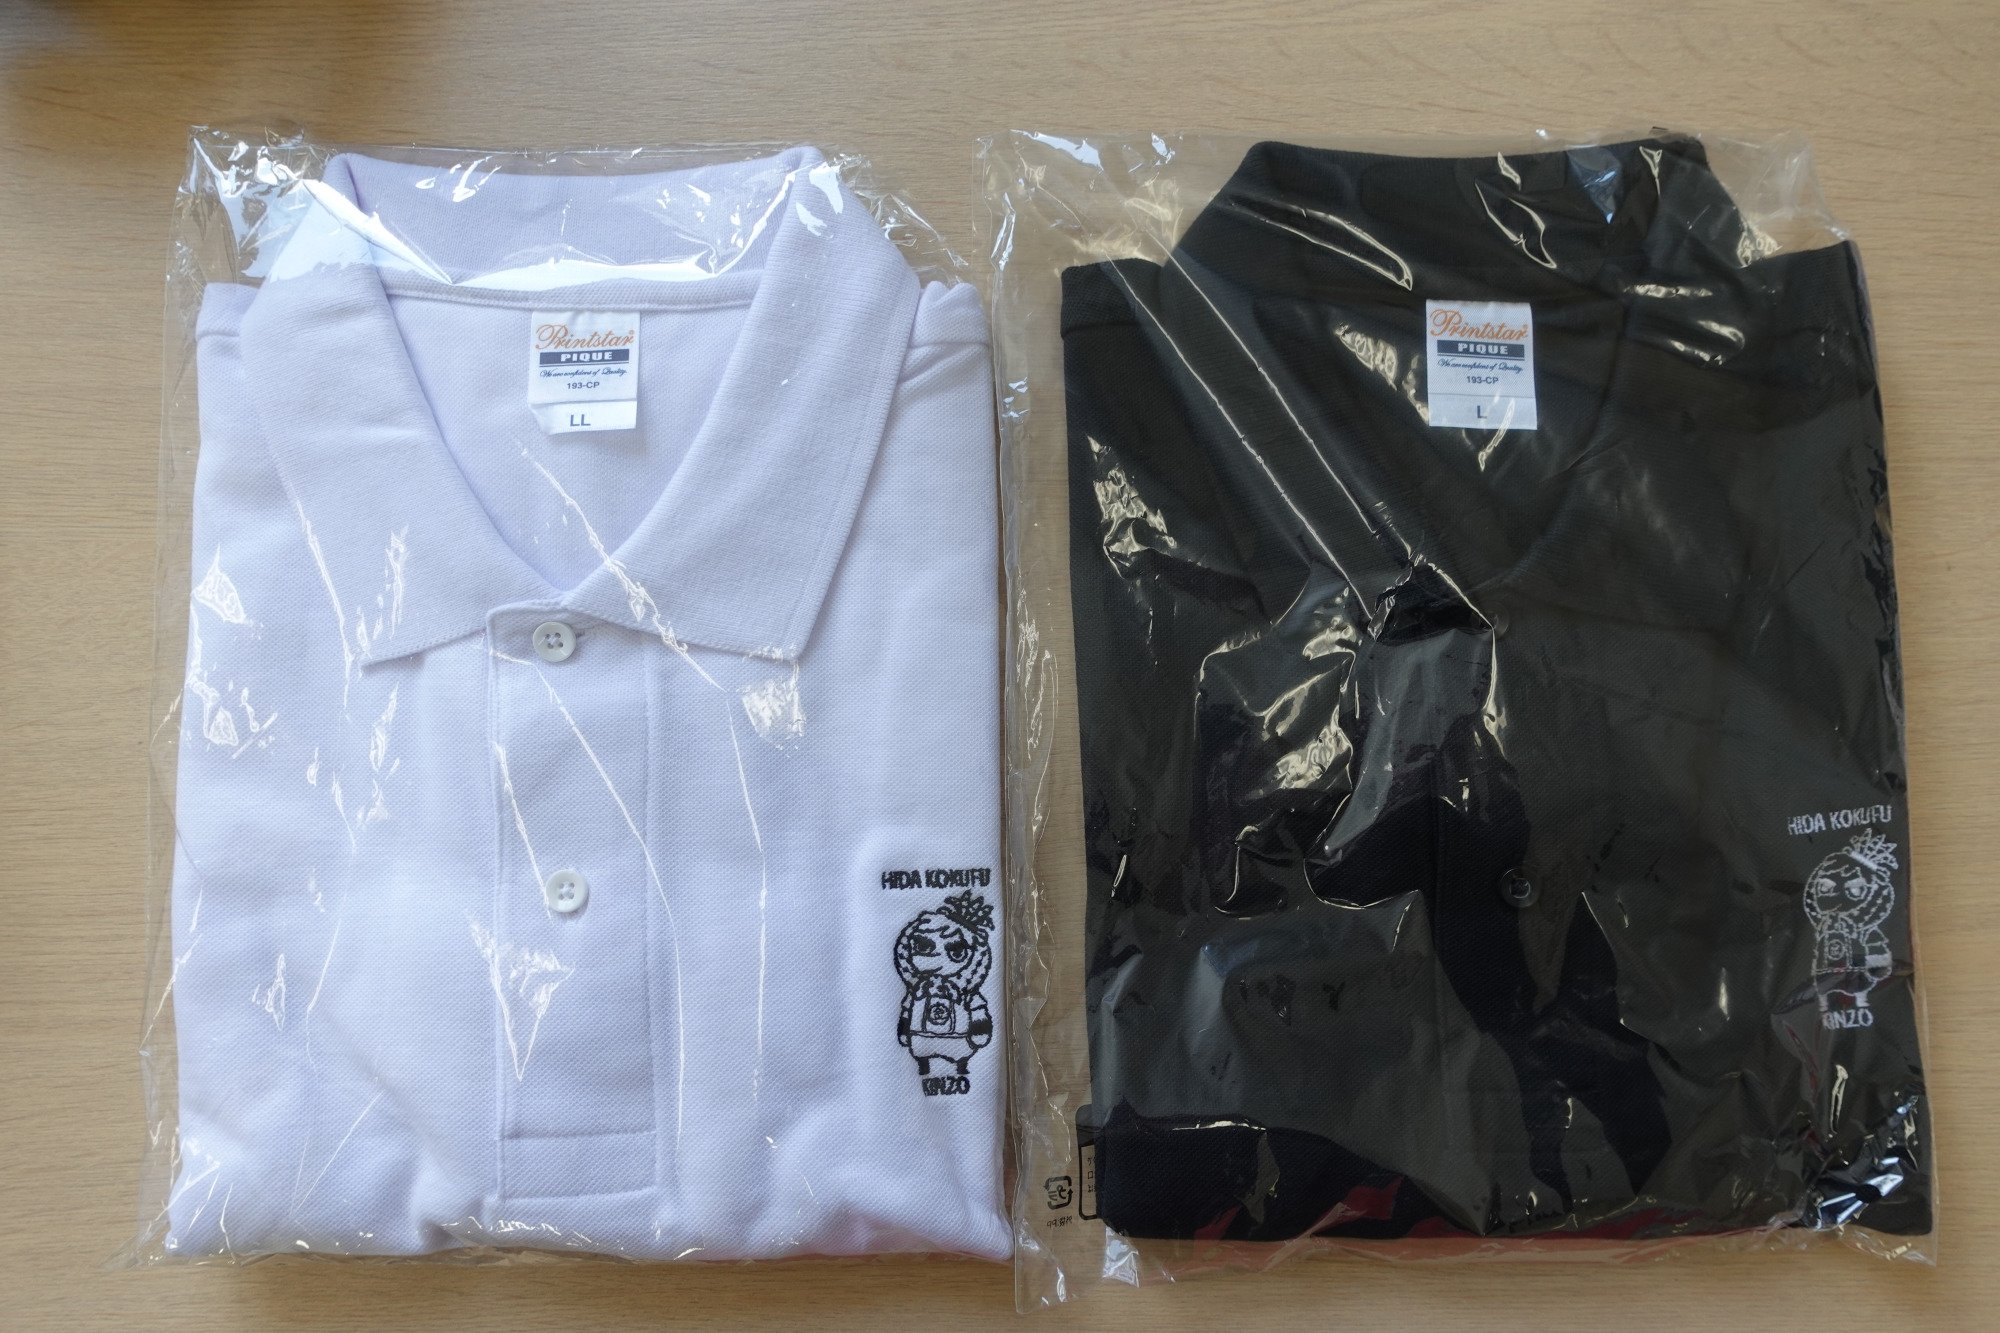 ポロシャツ（サイズS・M・L・LL）・各2,000円。色は白と黒の2種類です。